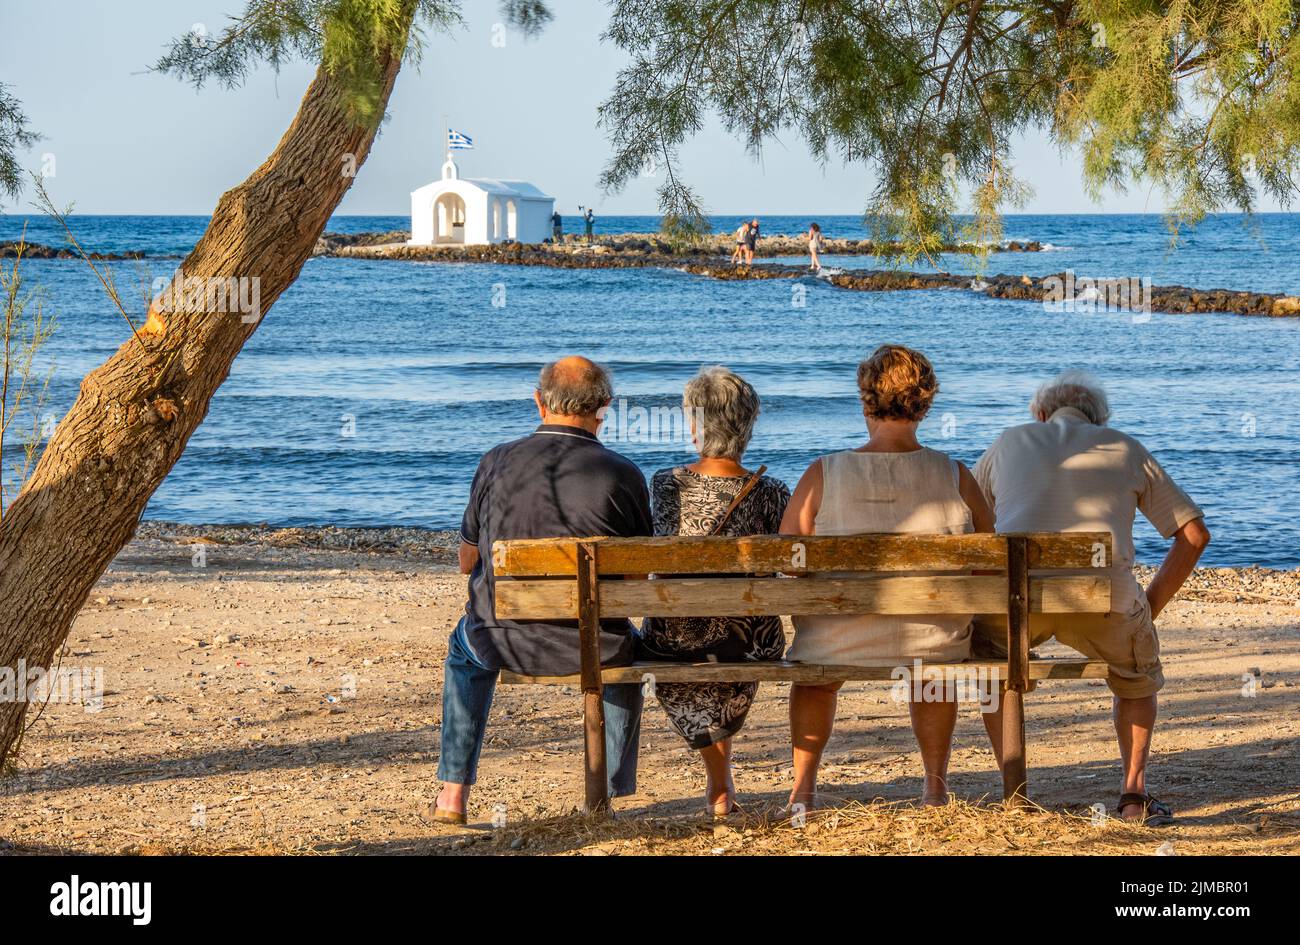 quatre retraités plus âgés assis dans le sahde d'un arbre donnant sur la mer sur l'île grecque de crète, deux couples assis sur un banc en bois Banque D'Images